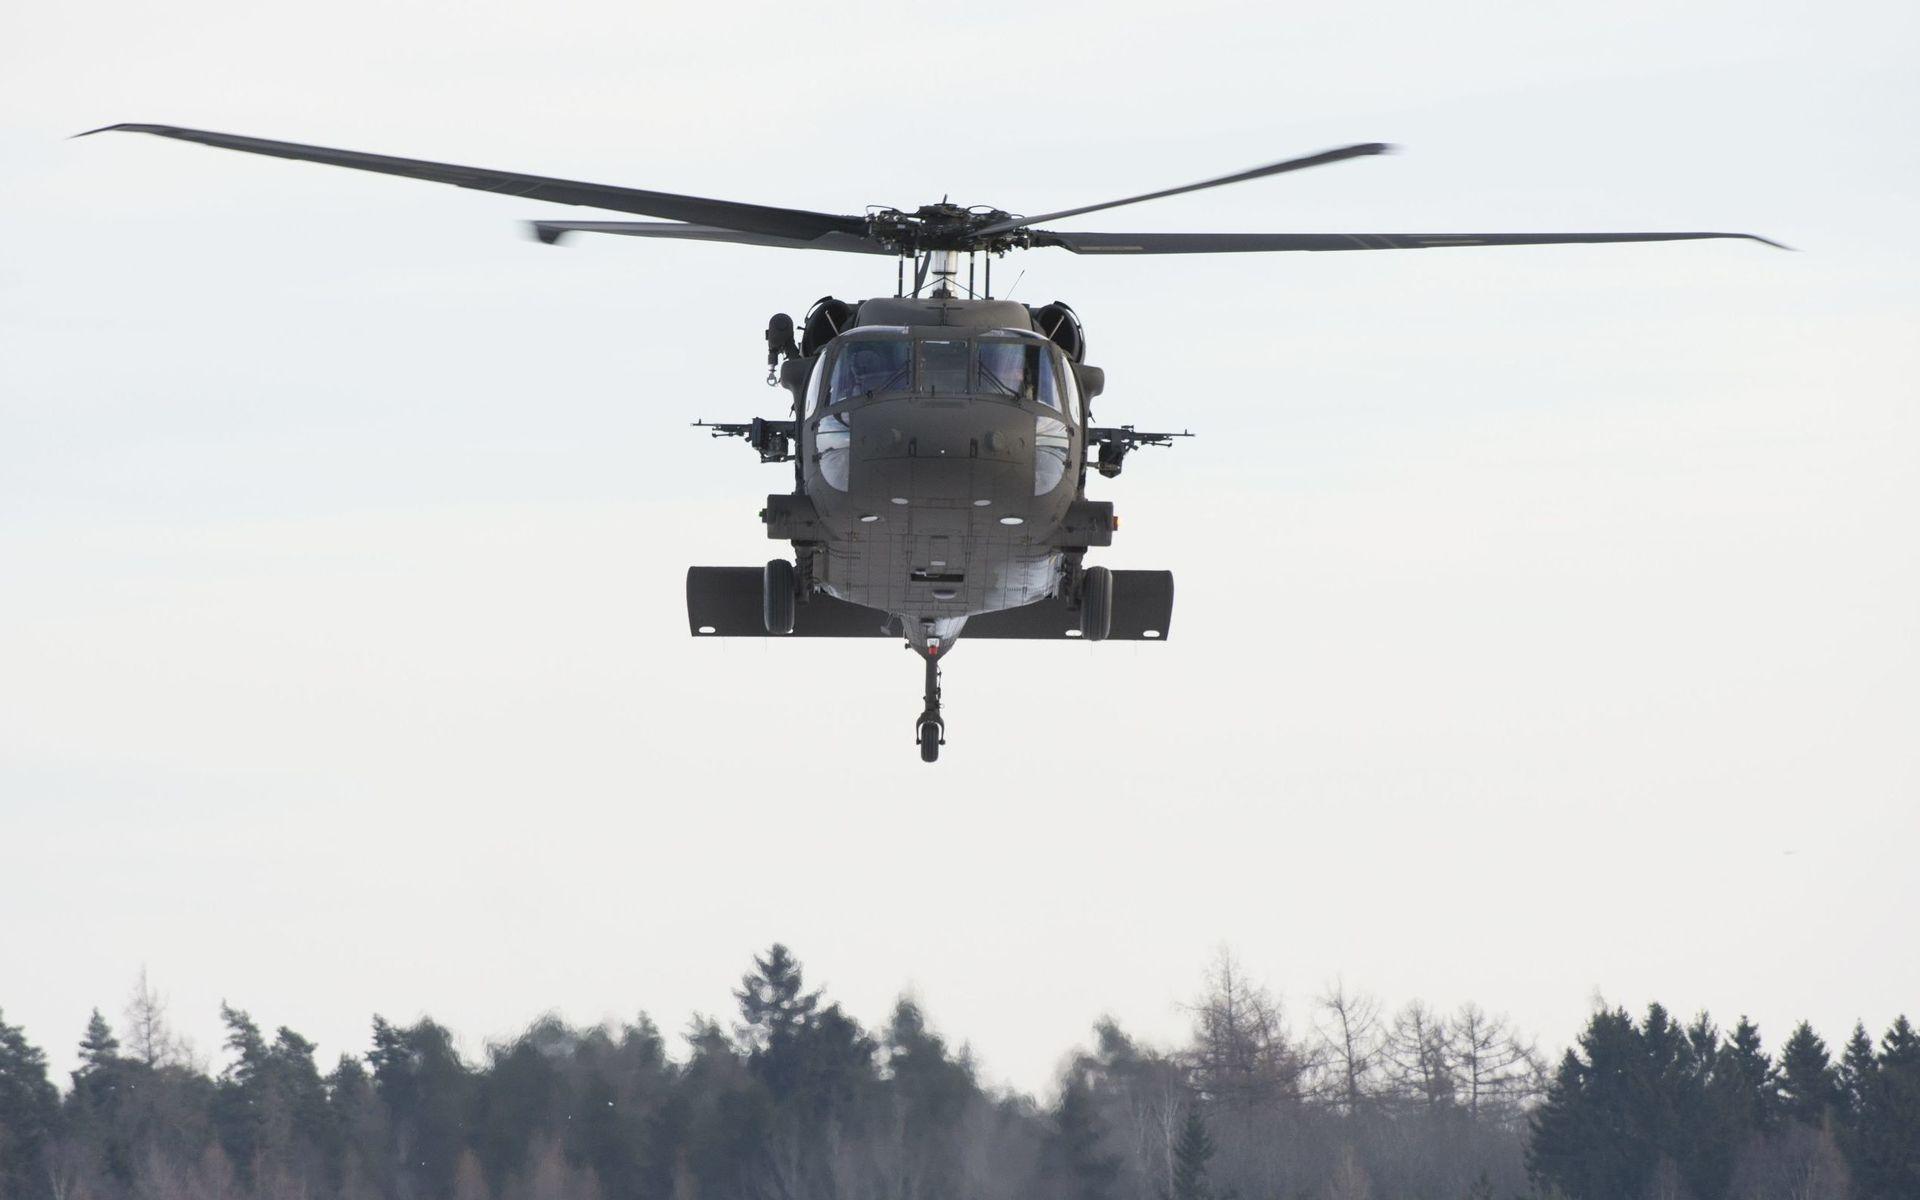 Helikopter 16 är den svenska benämningen på amerikanska Blackhawk, vilka köptes in i samband med den svenska insatsen i Afghanistan. Utrustad med två 7,62 mm kulsprutor samt olika typer av skyddssystem för att kunna avvärja angrepp. Används främst till transport av trupp, materiel och skadade.